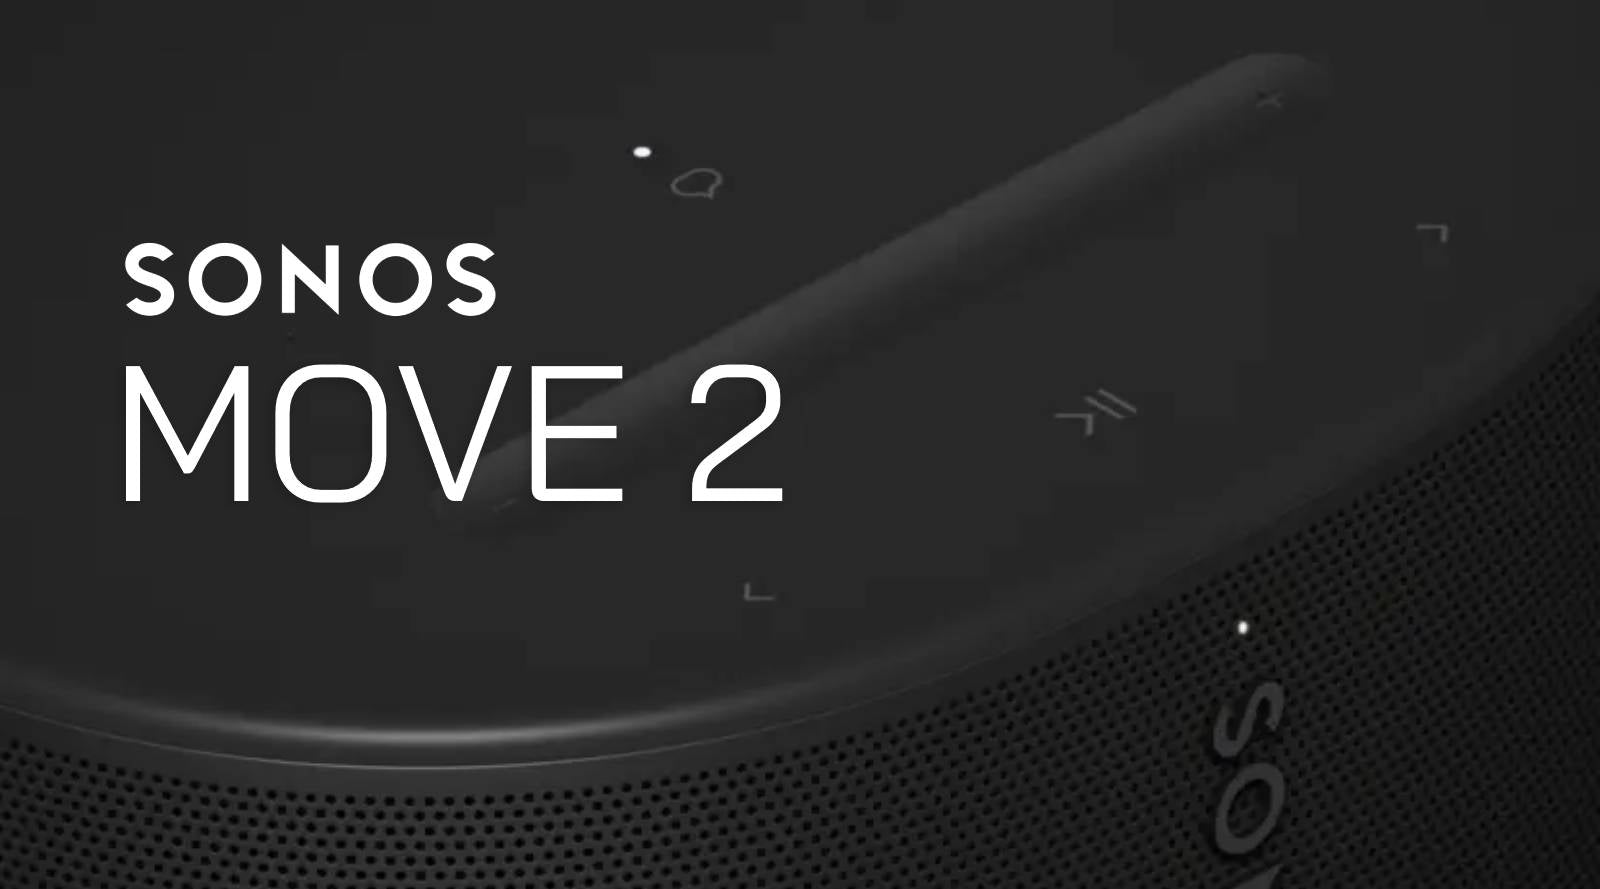 Sonos move 2